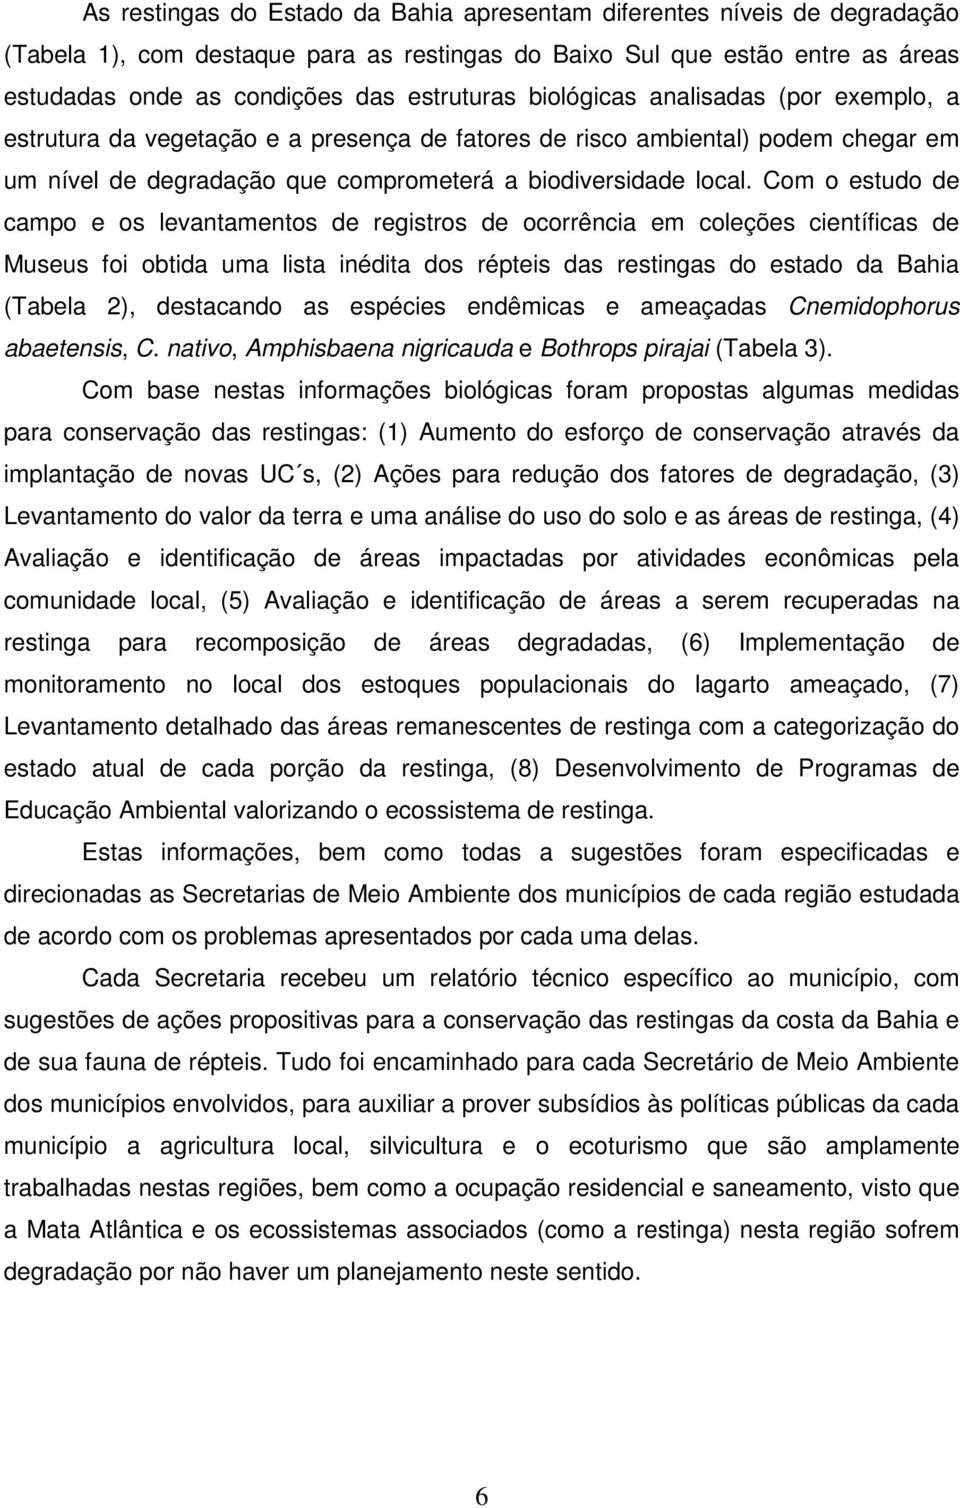 Com o estudo de campo e os levantamentos de registros de ocorrência em coleções científicas de Museus foi obtida uma lista inédita dos répteis das restingas do estado da Bahia (Tabela 2), destacando